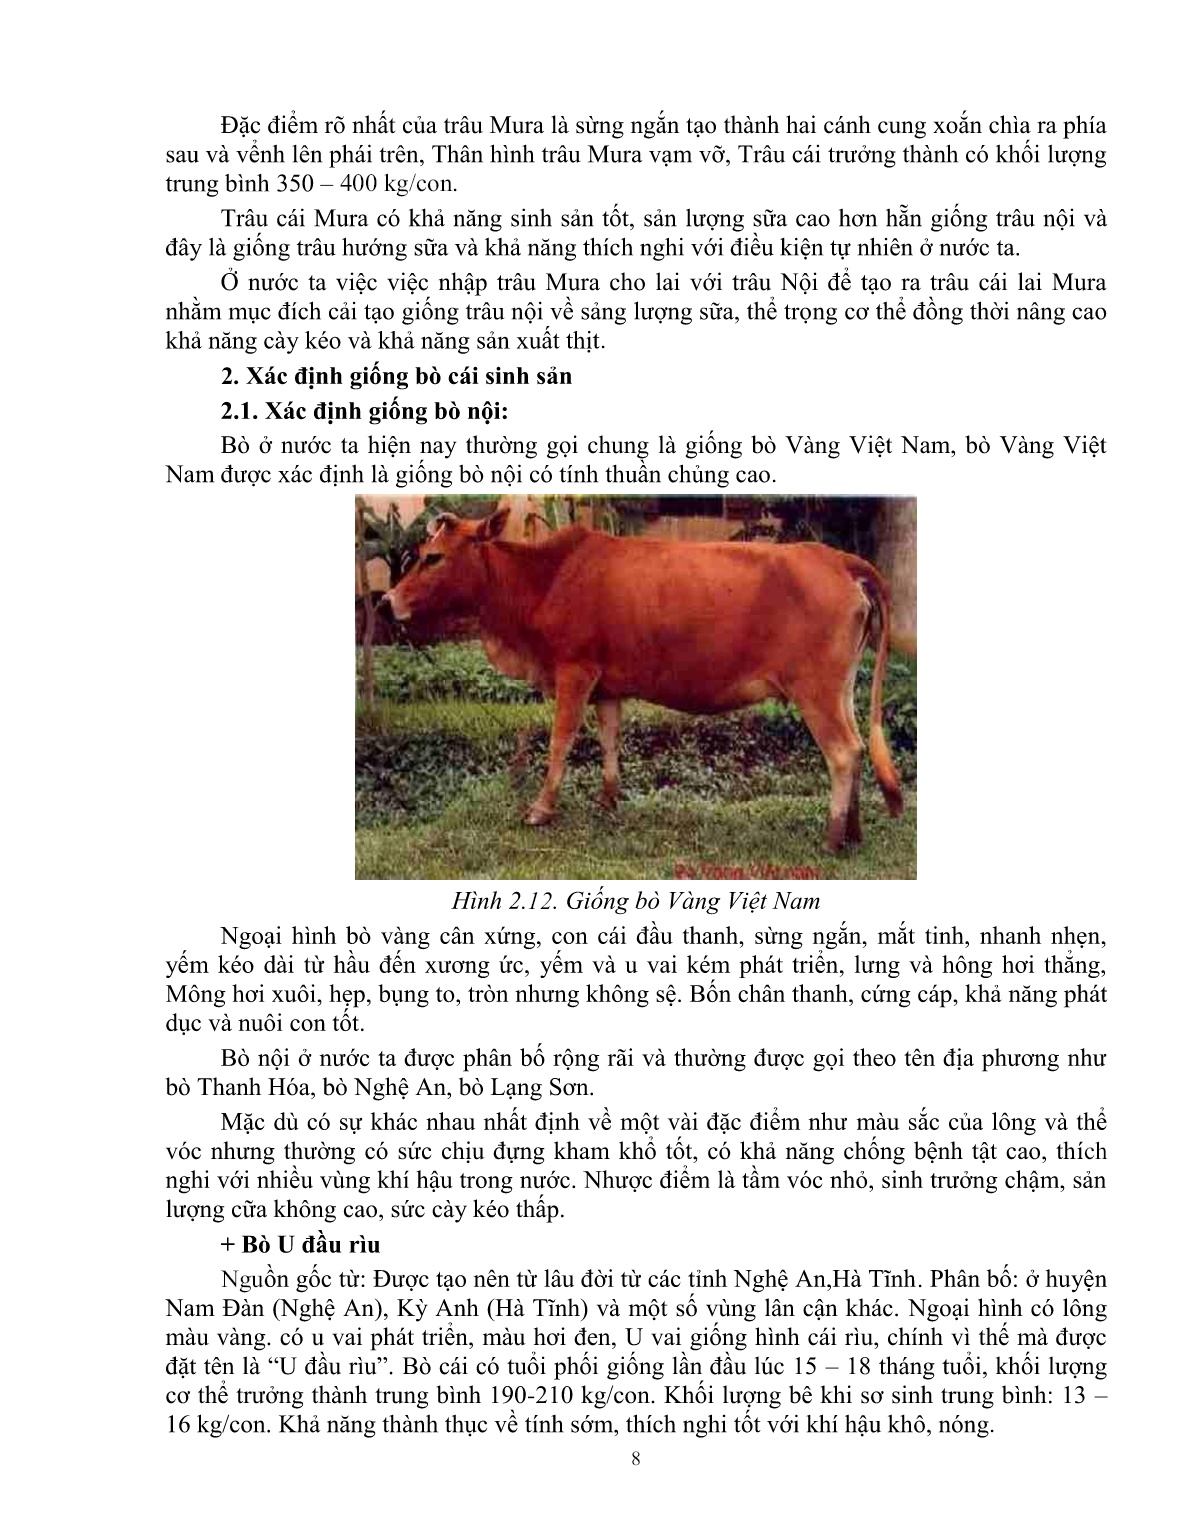 Giáo trình mô đun Nuôi trâu, bò cái sinh sản (Trình độ: Đào tạo dưới 3 tháng) trang 10